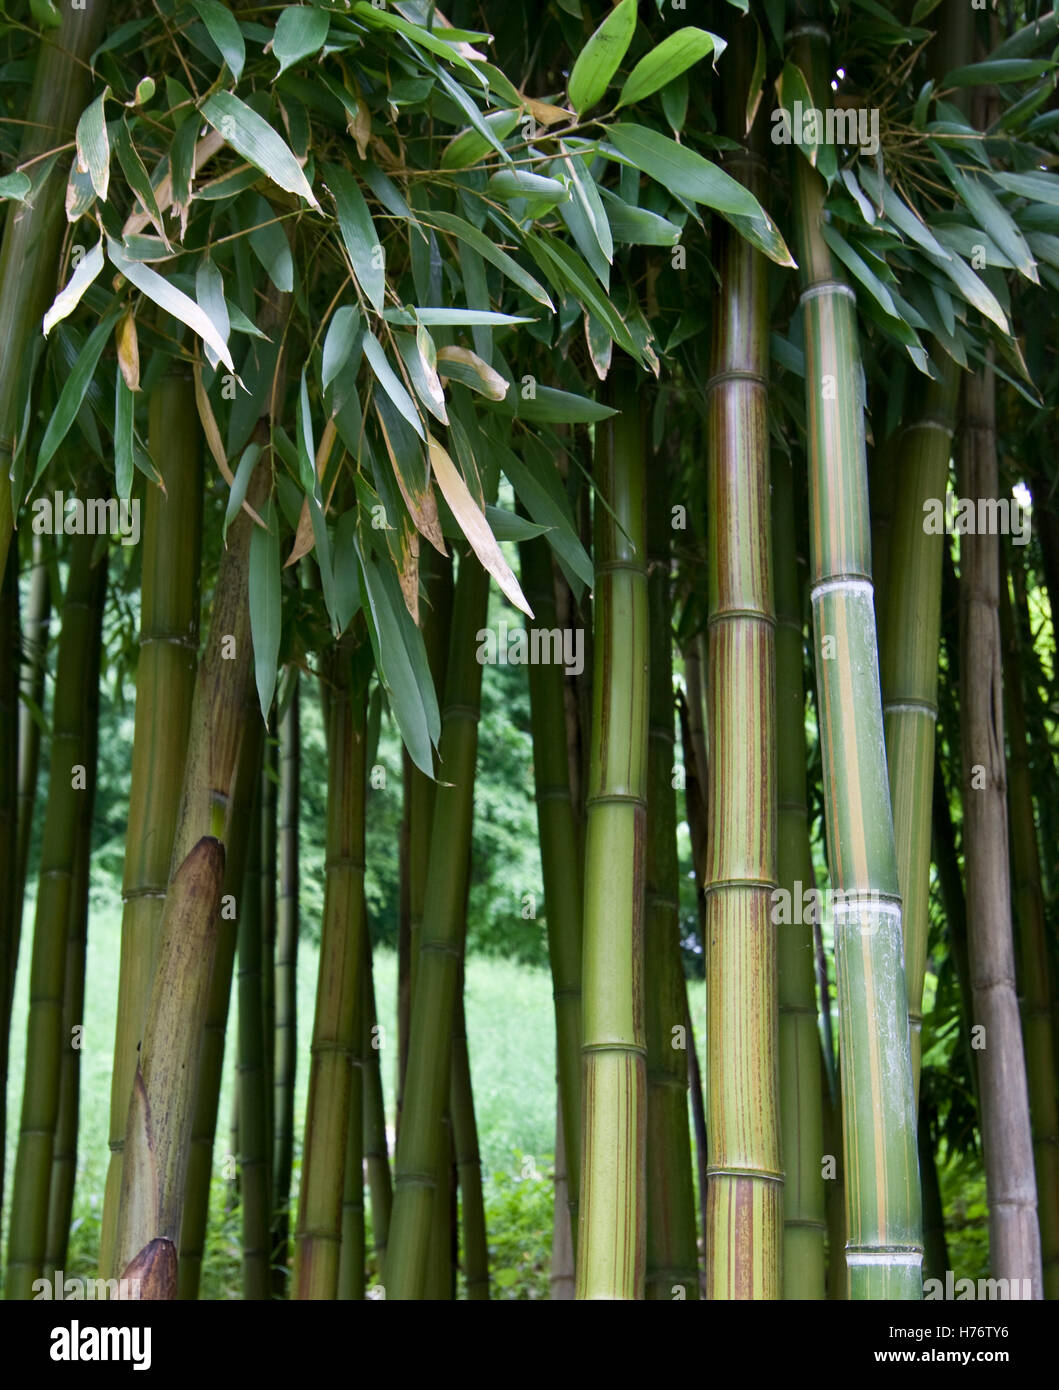 Wald aus grünen Bambus-Stangen, Bambusblätter, green Bamboo densely grown, with green bamboo leaves Stock Photo